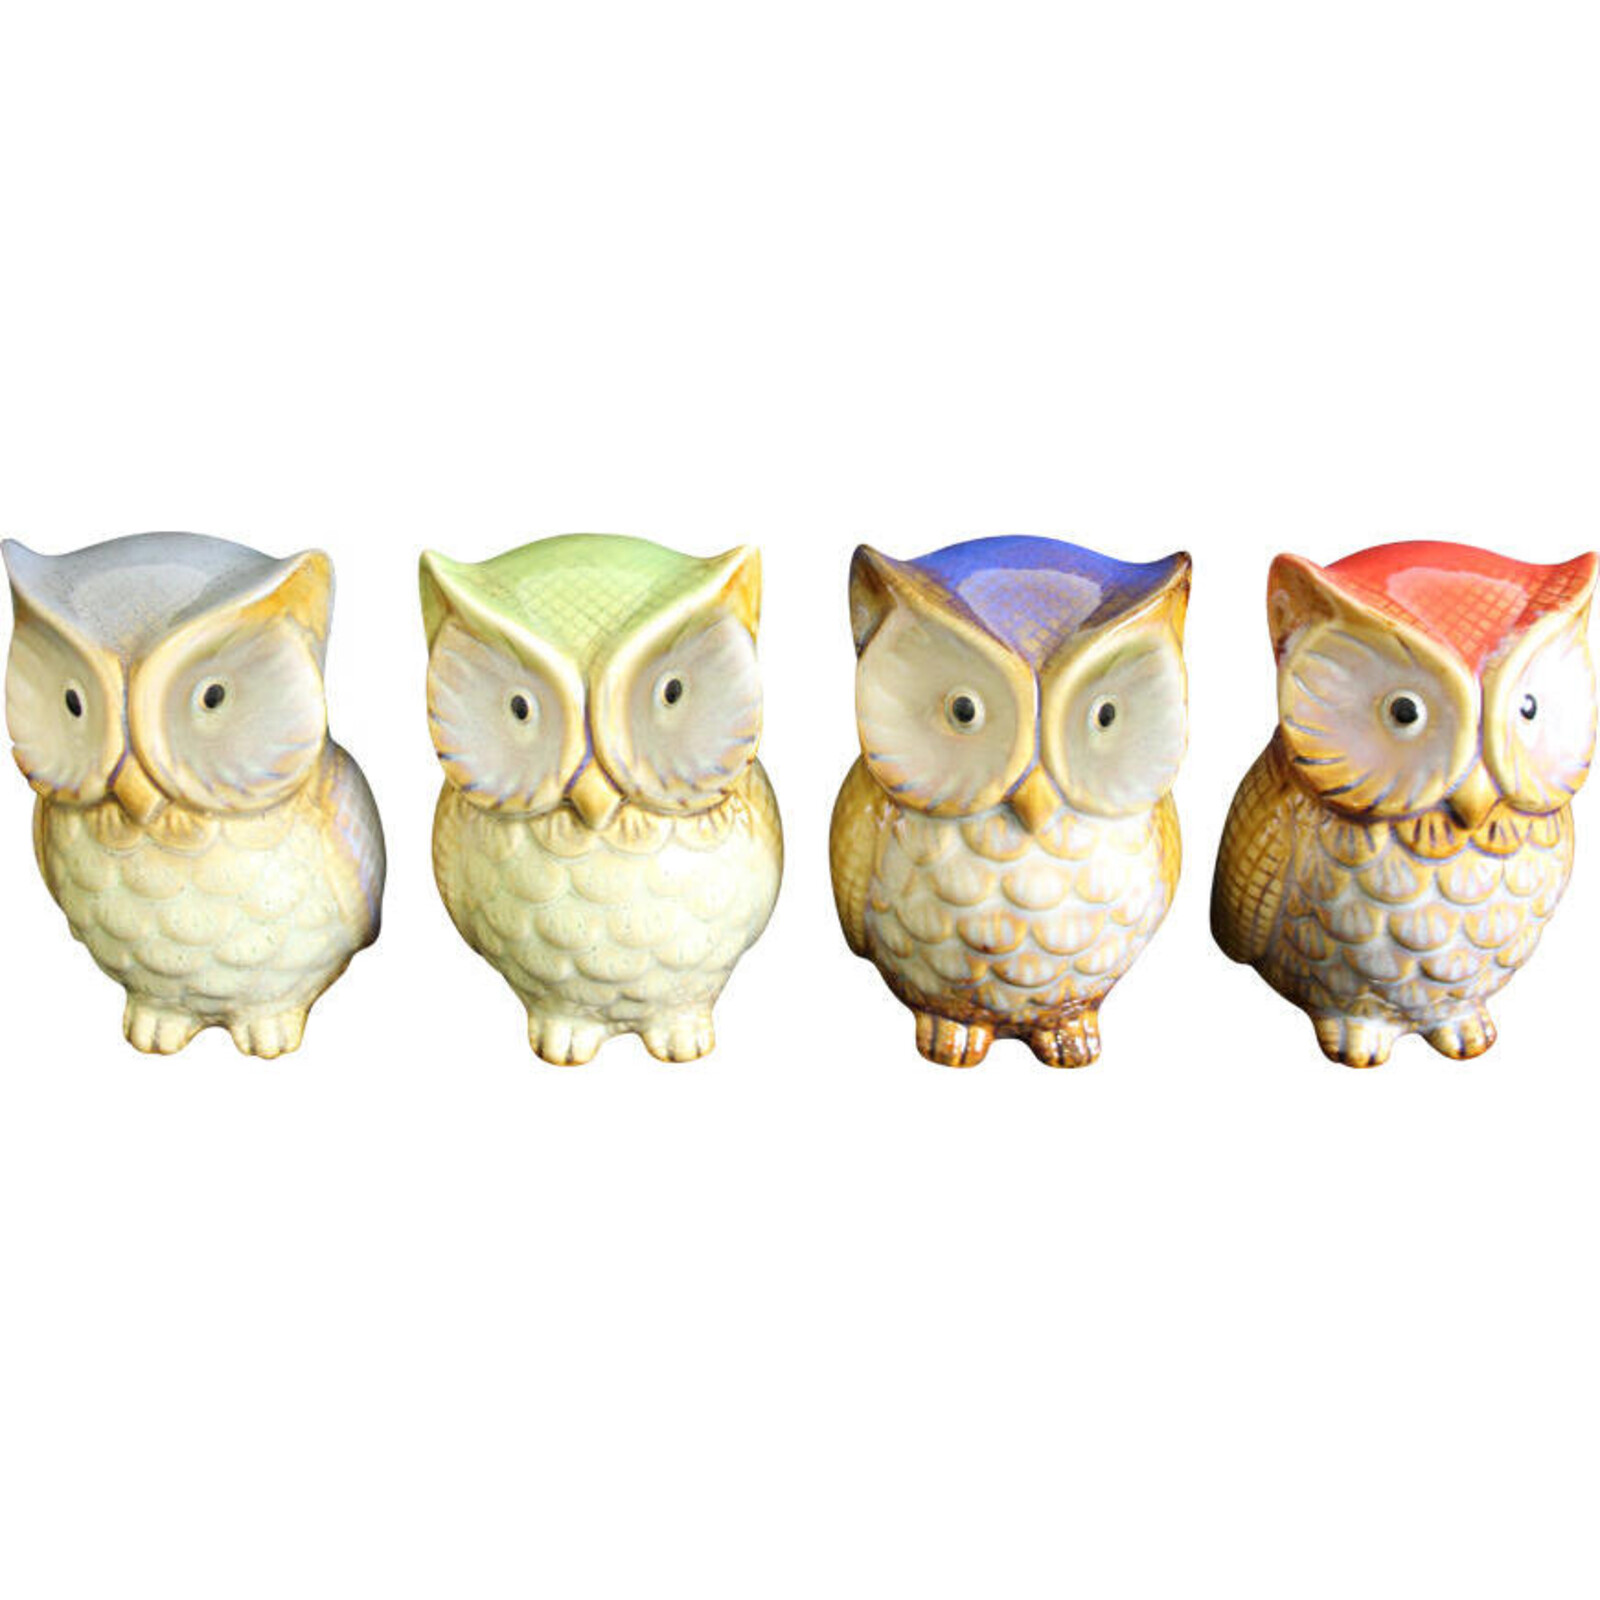 Ceramic Owls Colour S/4 Assorted